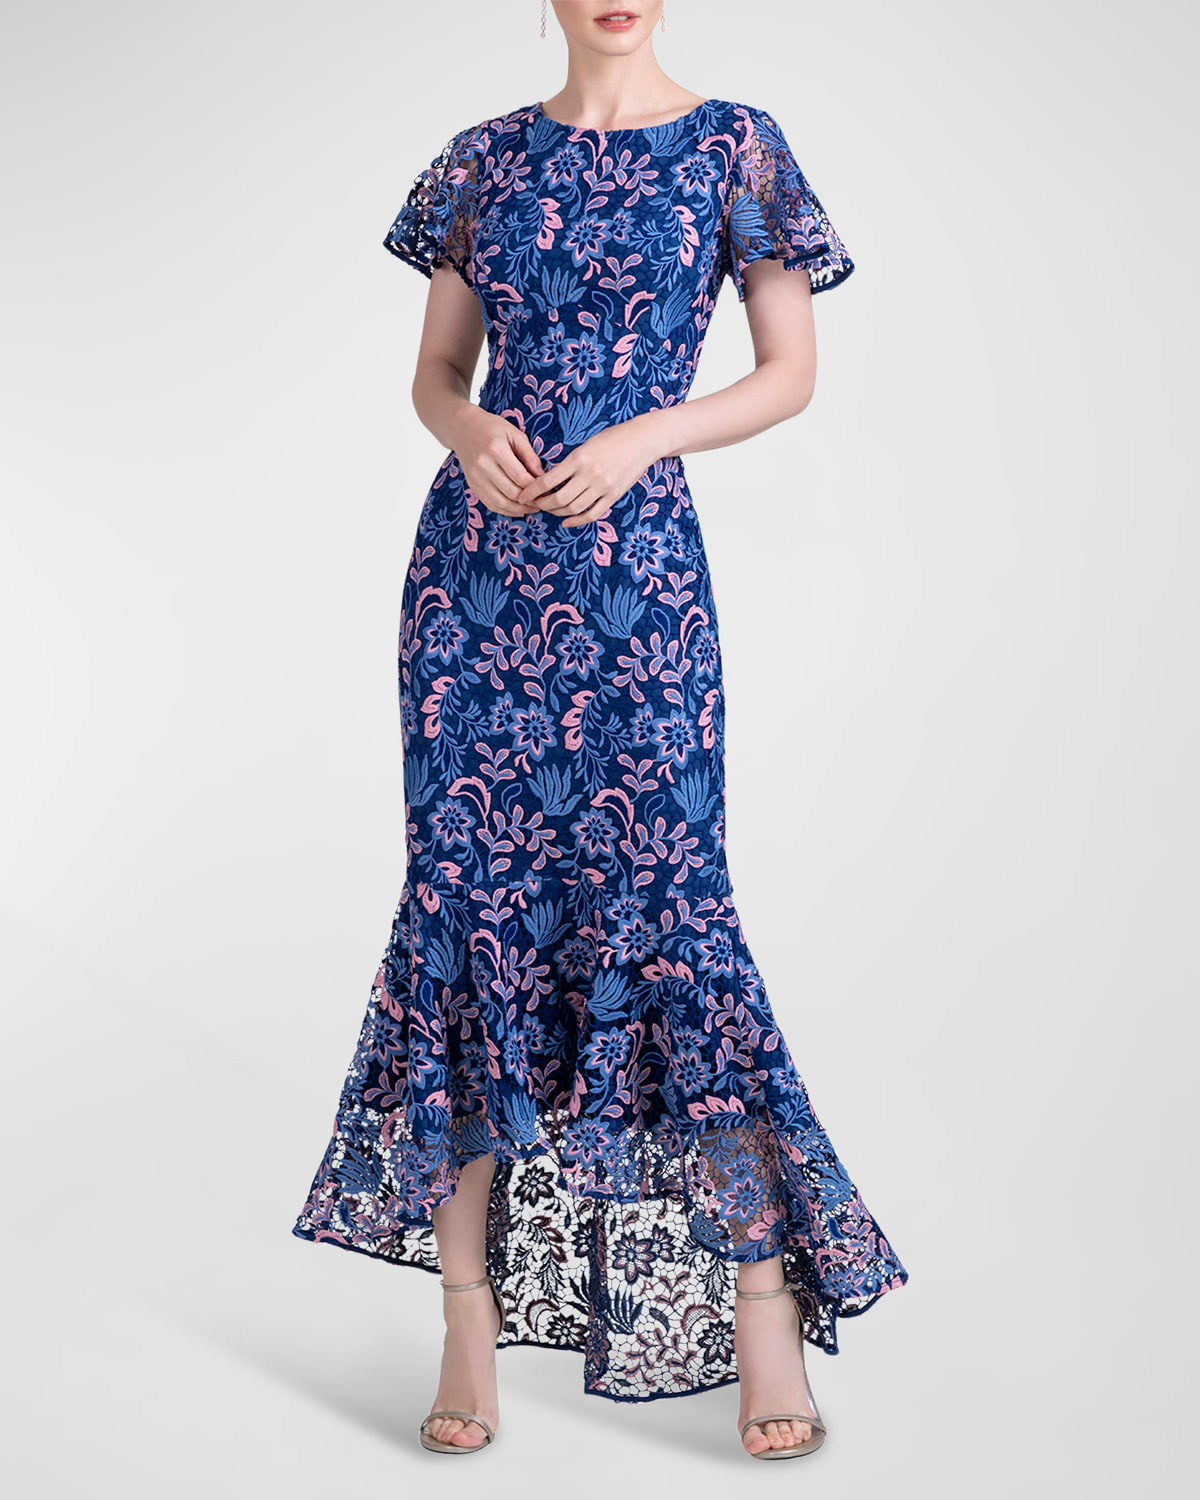 High-Low Floral Lace Trumpet Dress